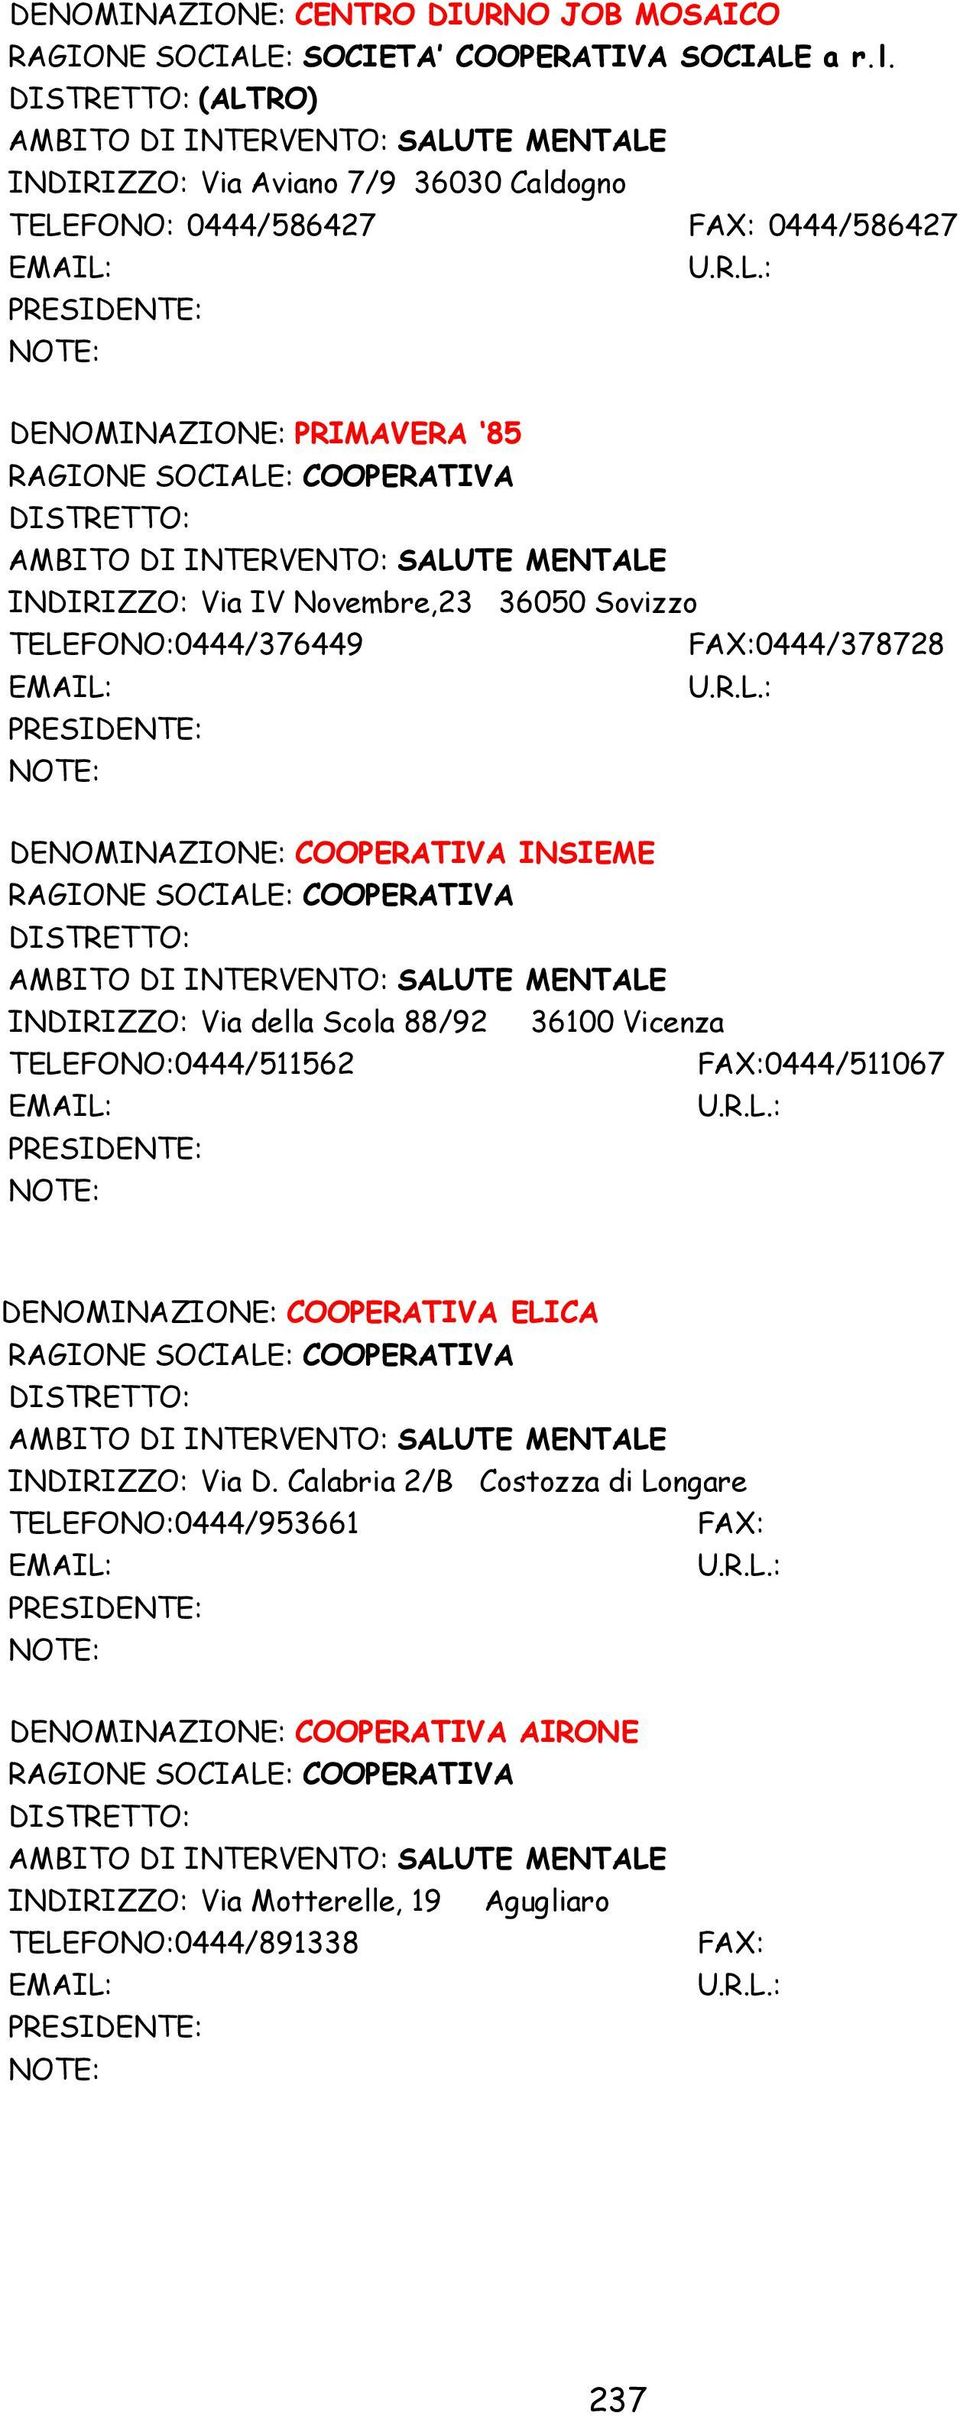 Novembre,23 36050 Sovizzo TELEFONO:0444/376449 FAX:0444/378728 PRESIDENTE: DENOMINAZIONE: COOPERATIVA INSIEME RAGIONE SOCIALE: COOPERATIVA DISTRETTO: INDIRIZZO: Via della Scola 88/92 36100 Vicenza